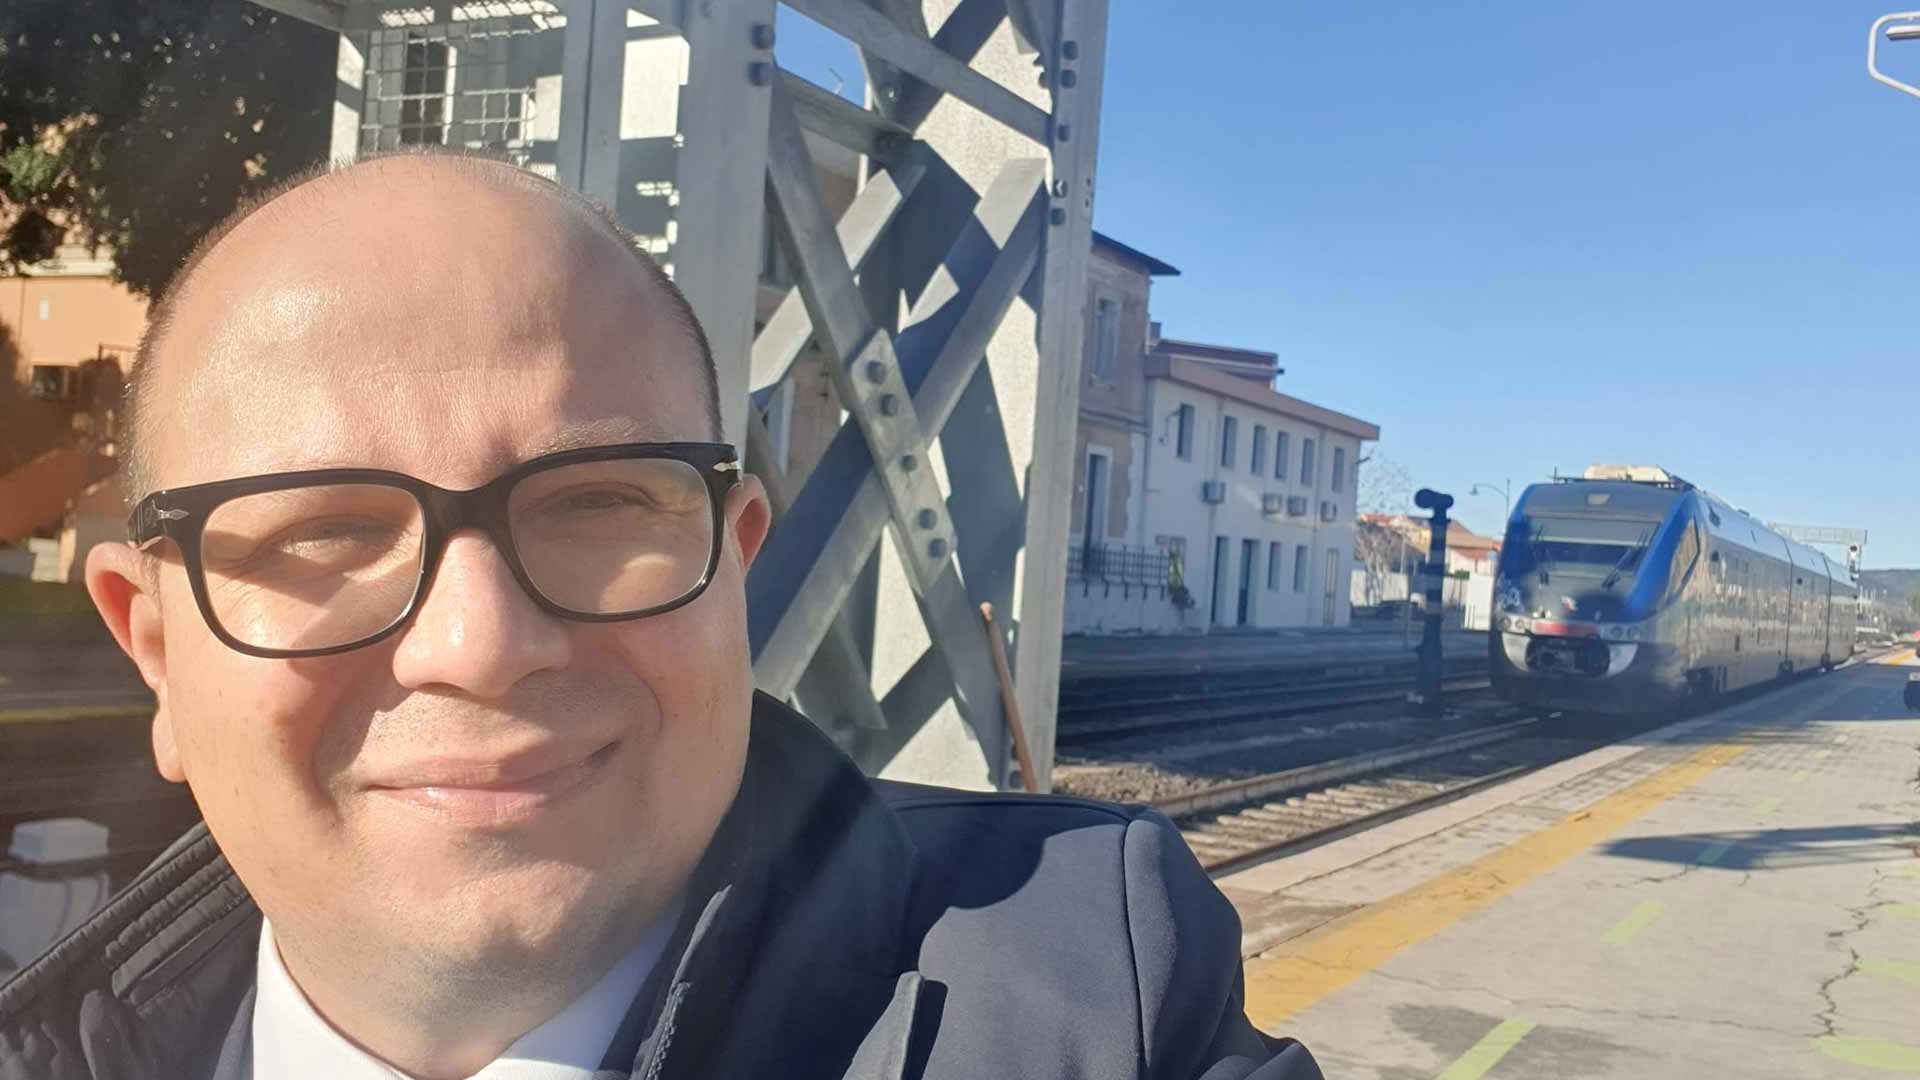 Deidda, in treno da Olbia a Cagliari: treni lenti, strapieni e bagno fuori uso